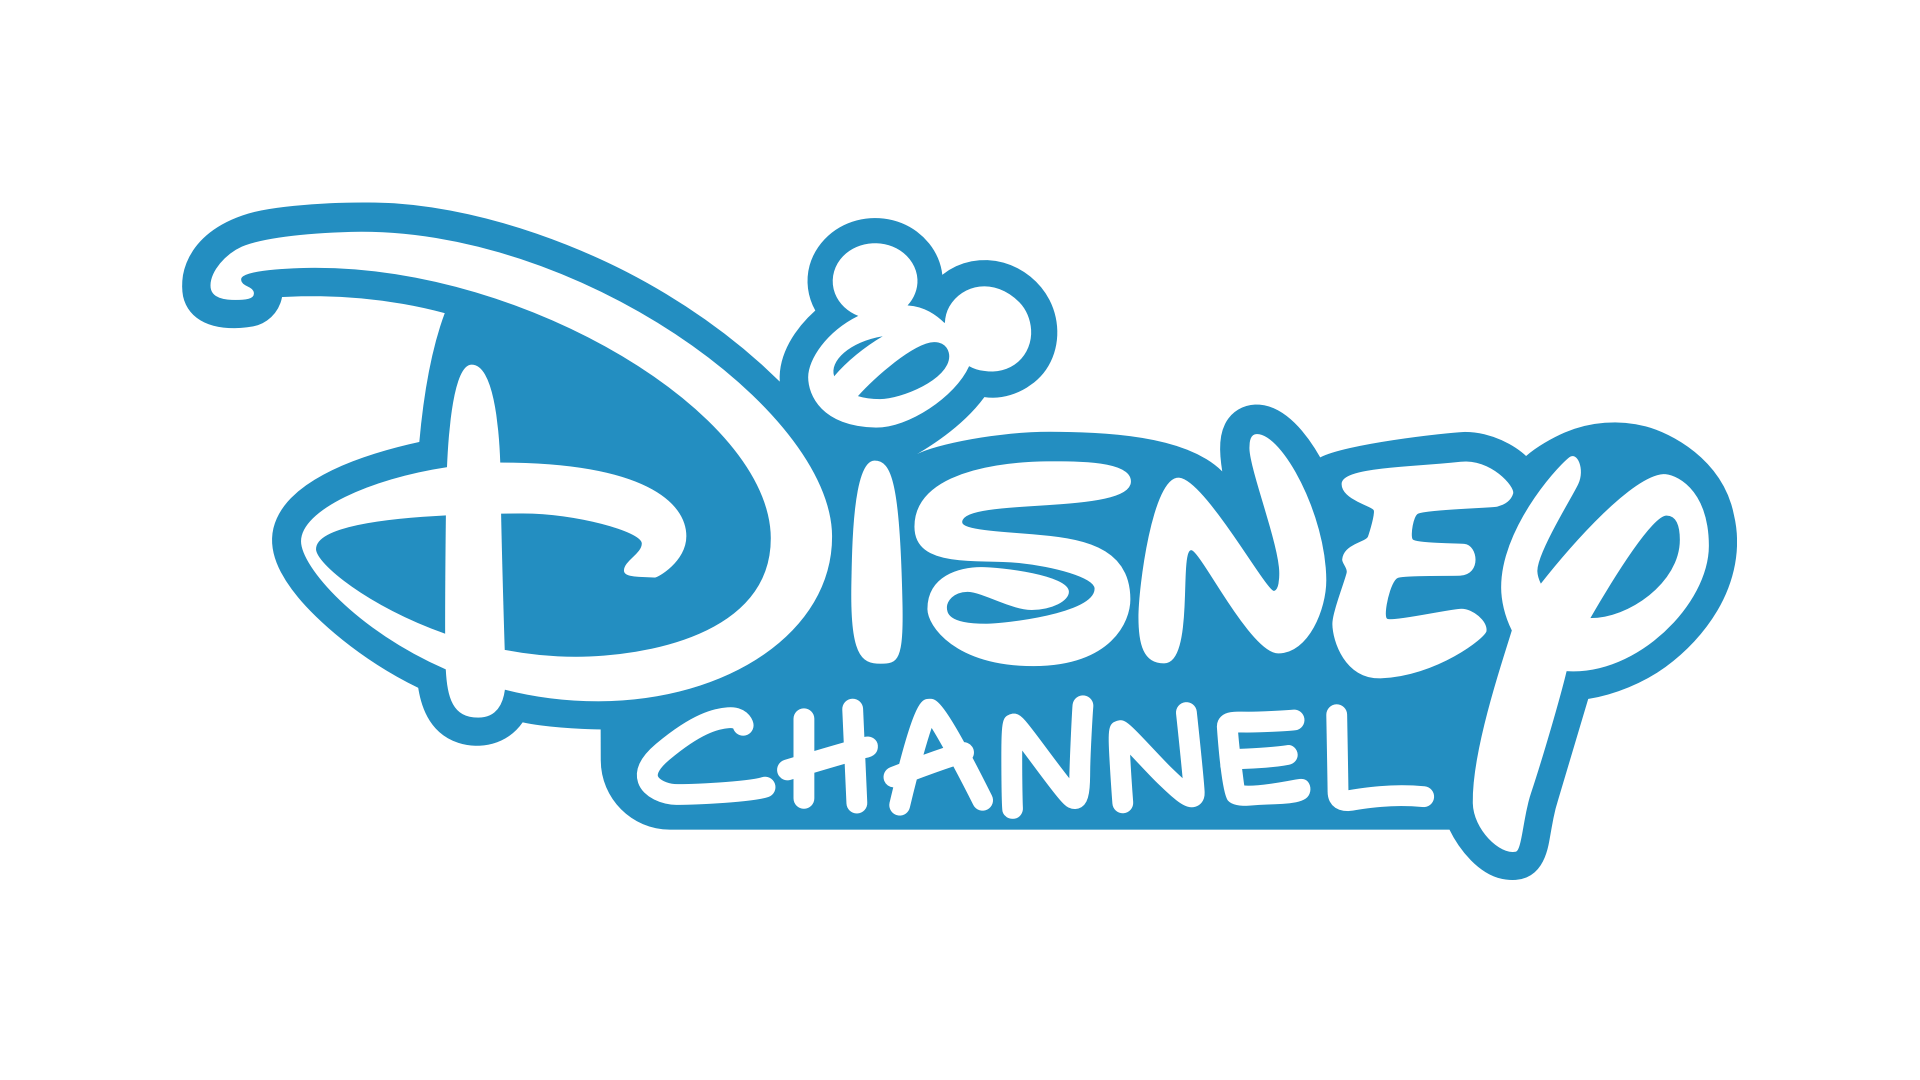 Передач канала дисней. Телеканал Дисней. Логотип Disney channel. Канал Дисней картинки. Дисней значок канала.